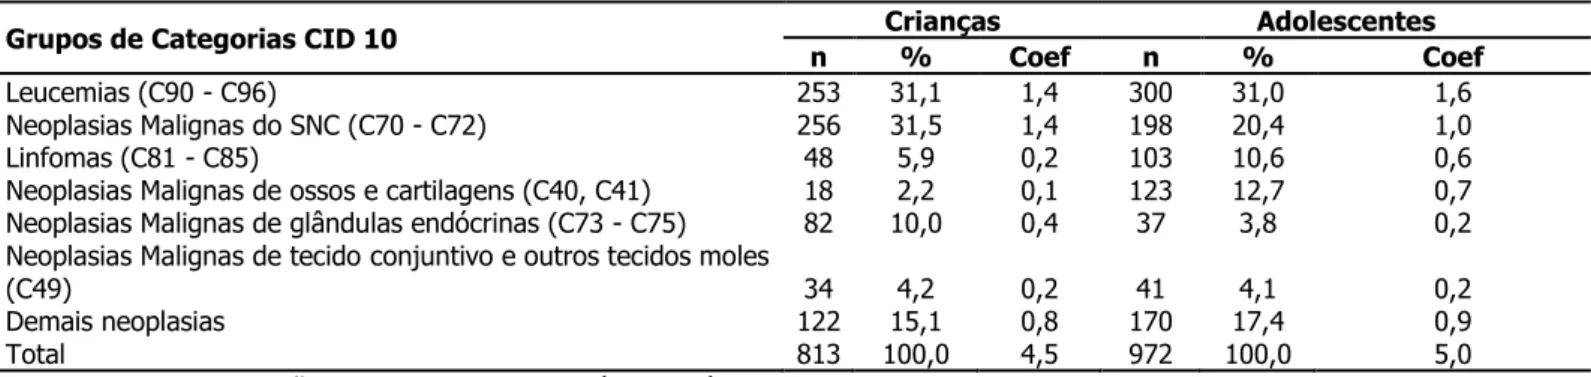 Tabela  2  -  Mortalidade  por  neoplasia  maligna  segundo  idade  e  grupos  mais  representativos  da  Classificação  Internacional de Doenças (CID-10)